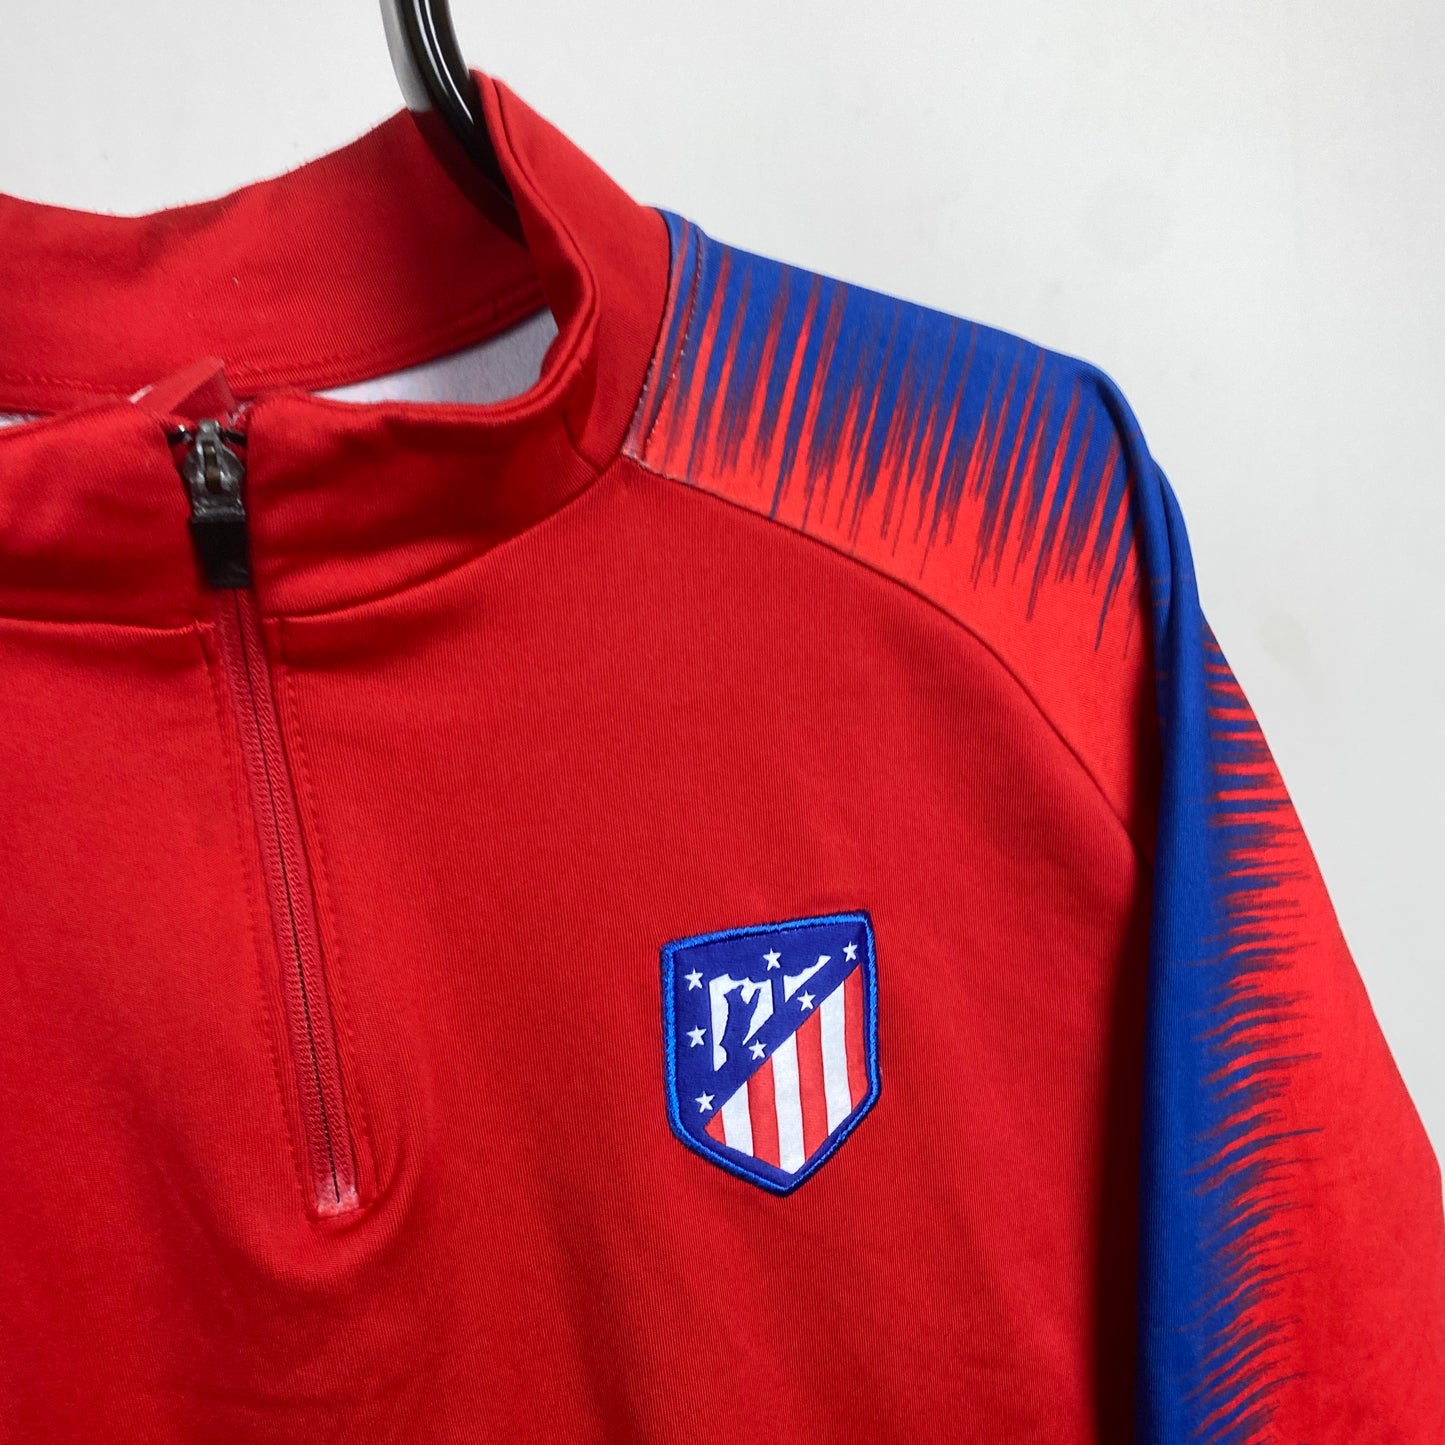 00s Nike Atletico Madrid 1/4 Zip Sweatshirt Red XL